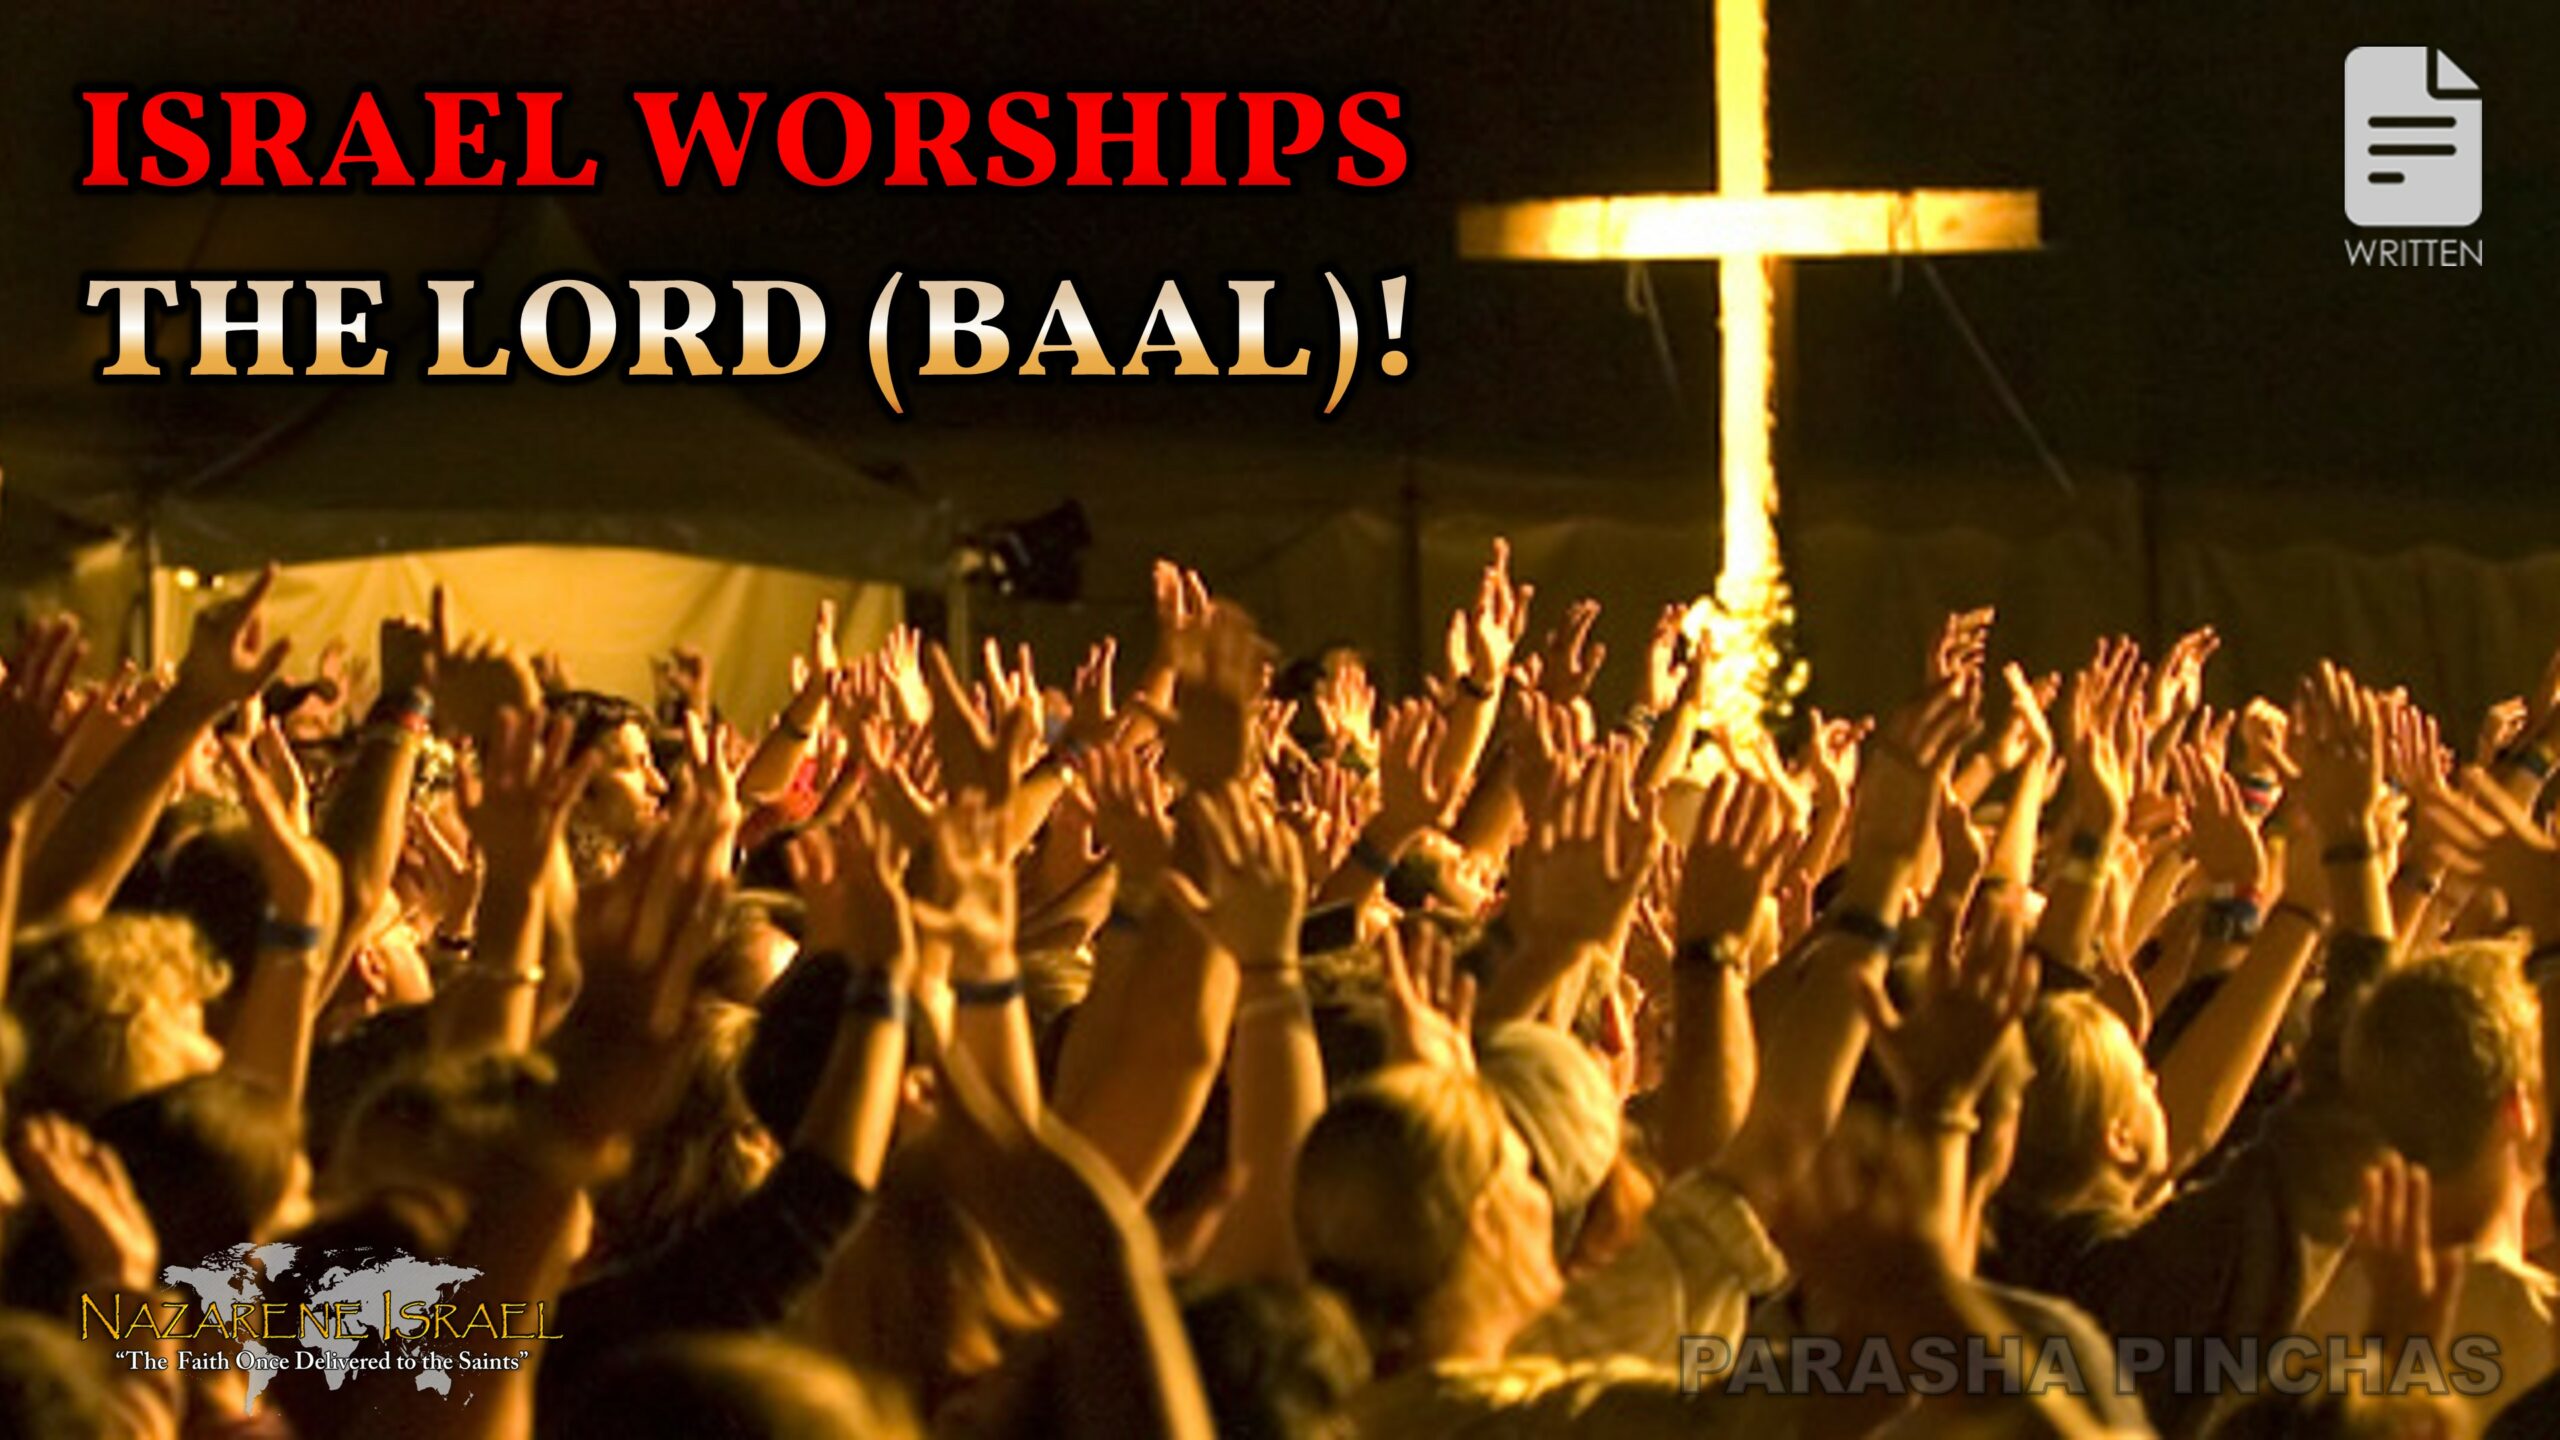 Parasha Pinchas 2022: Israel Worships THE LORD (BAAL)!